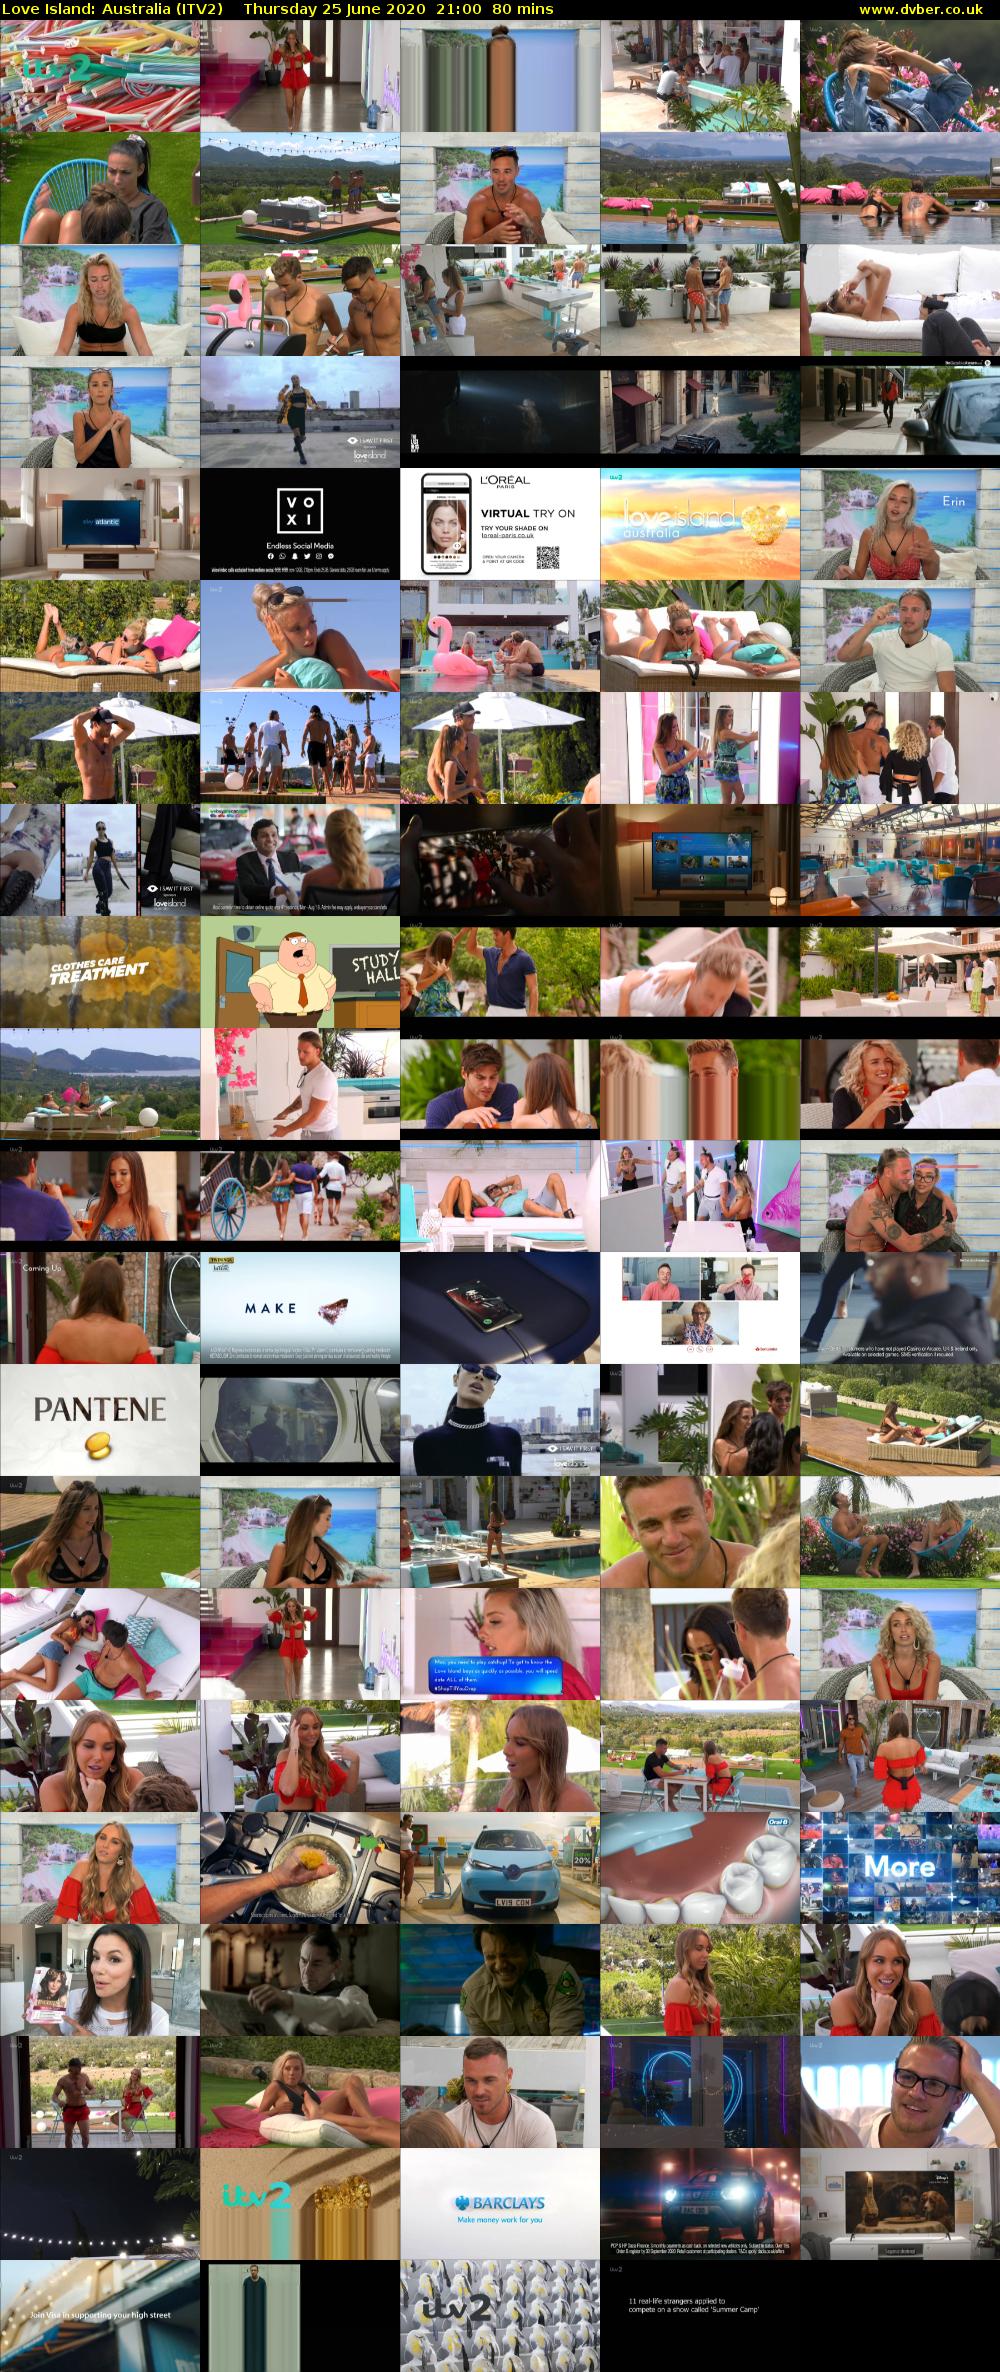 Love Island: Australia (ITV2) Thursday 25 June 2020 21:00 - 22:20